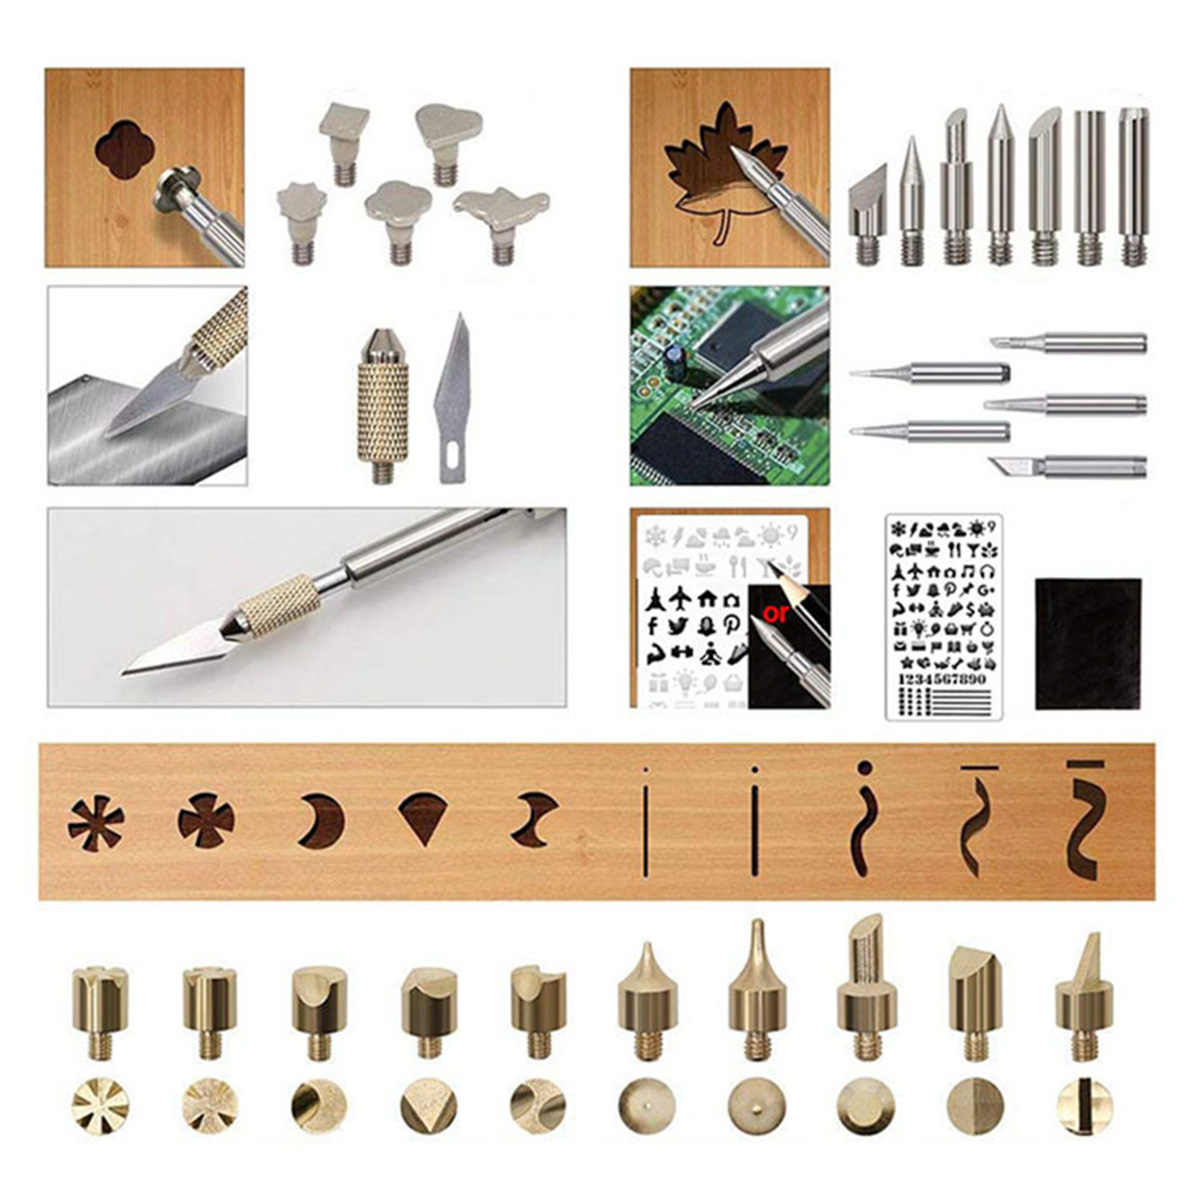 128Pcs-60W-Electric-Soldering-Iron-Kit-Engraving-Pen-Wood-Burning-Pyrography-Craft-Tool-1830874-12